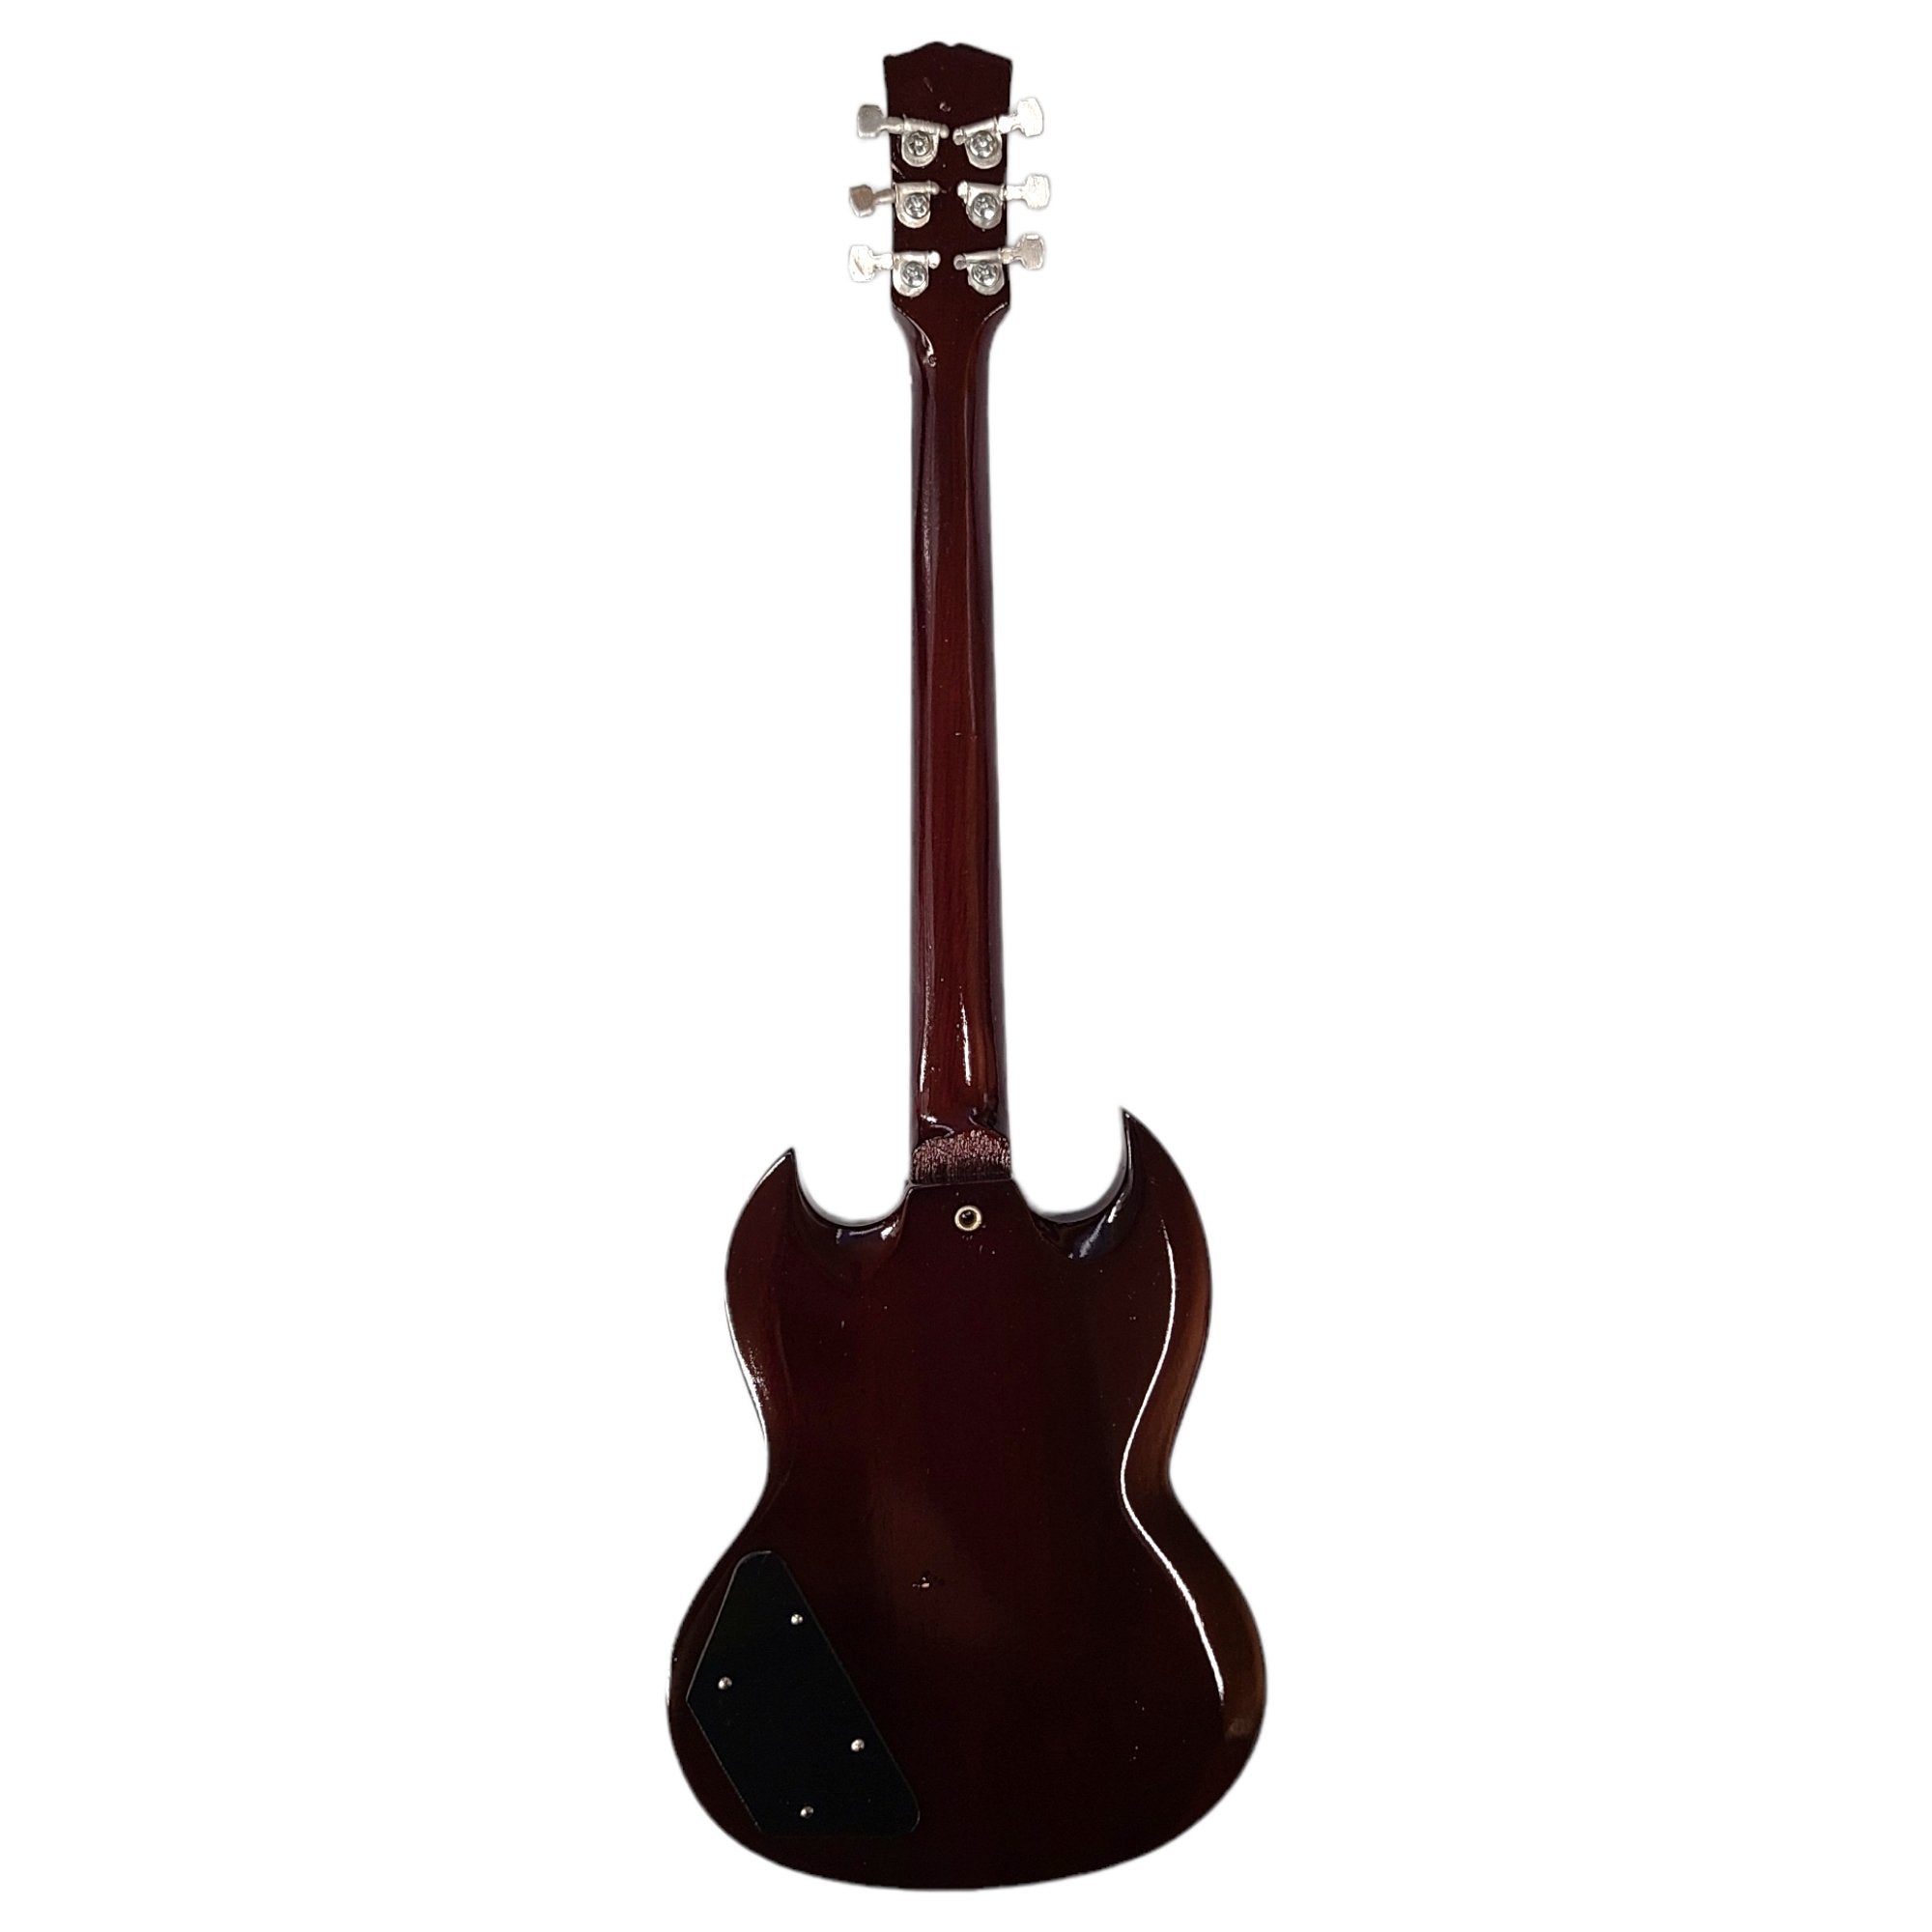 Axe Heaven Gibson 1964 SG Standard Cherry Mini Guitar Replica GG-220